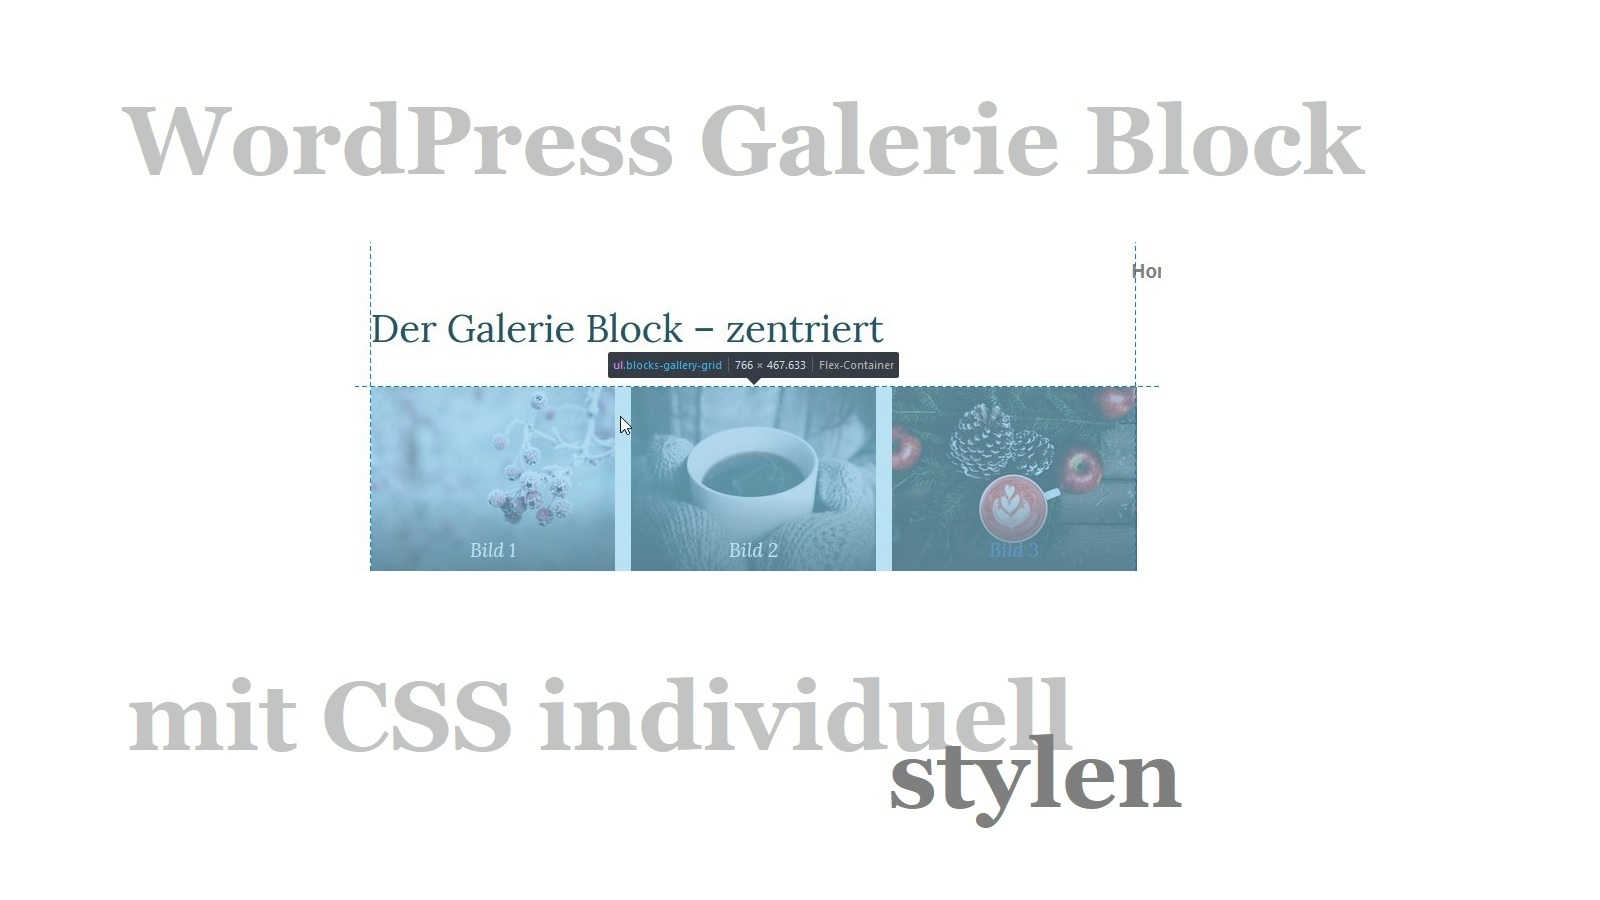 WordPress Galerie Block mit CSS individuell stylen – so geht’s